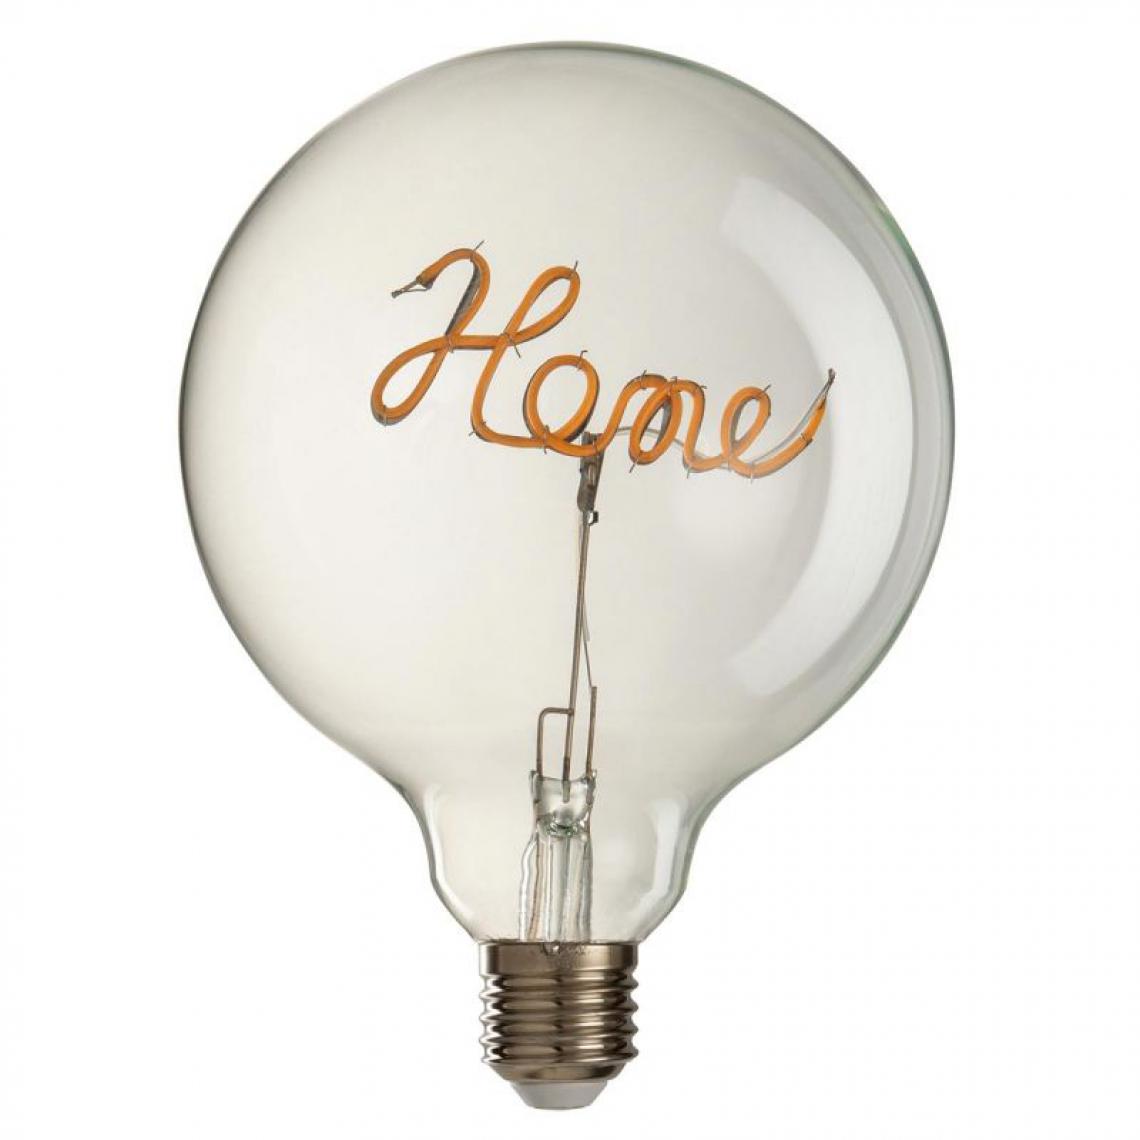 Paris Prix - Ampoule à Led Design Home 17cm Jaune & Transparent - Ampoules LED